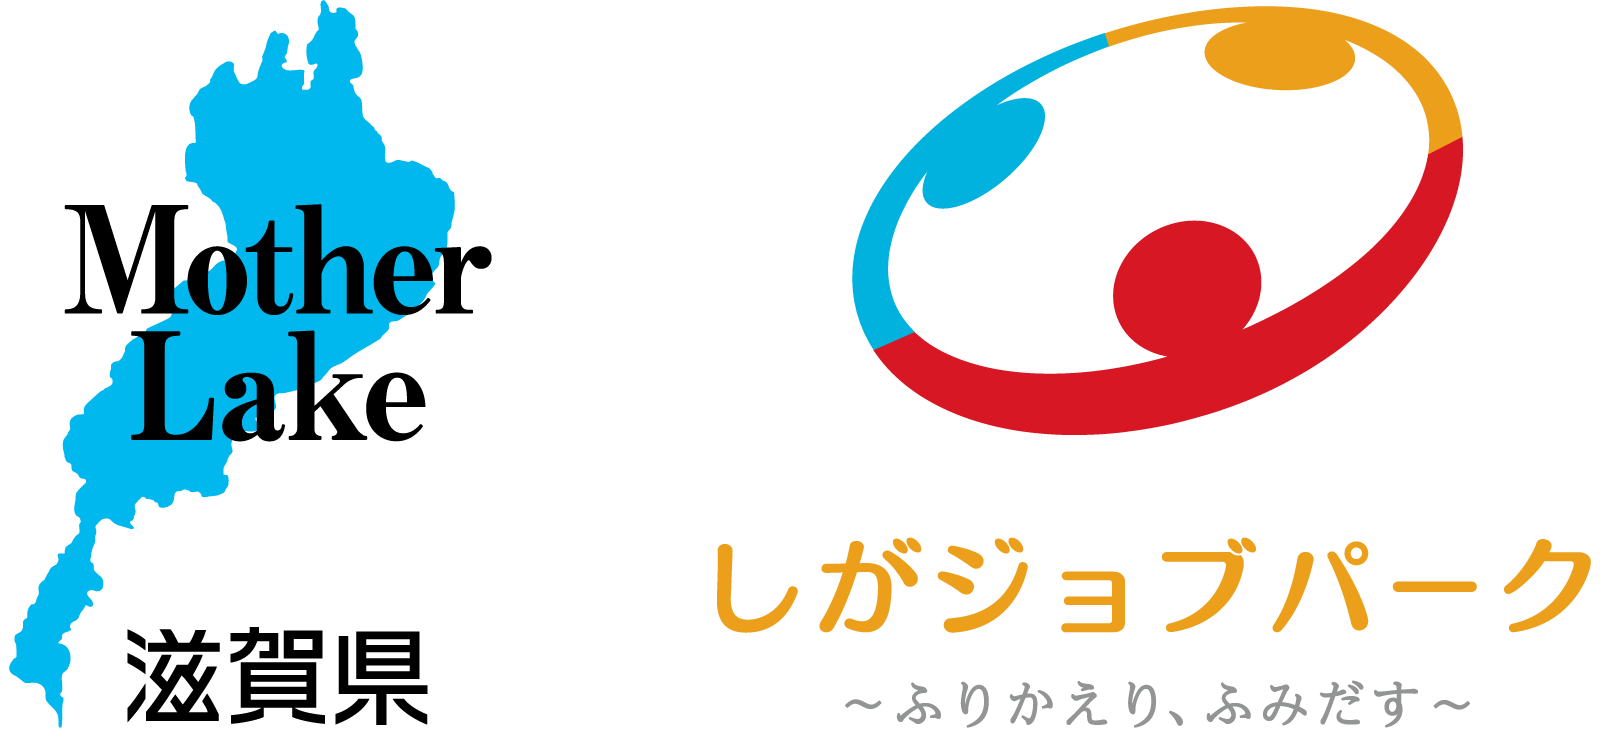 滋賀県・ジョブパークロゴ